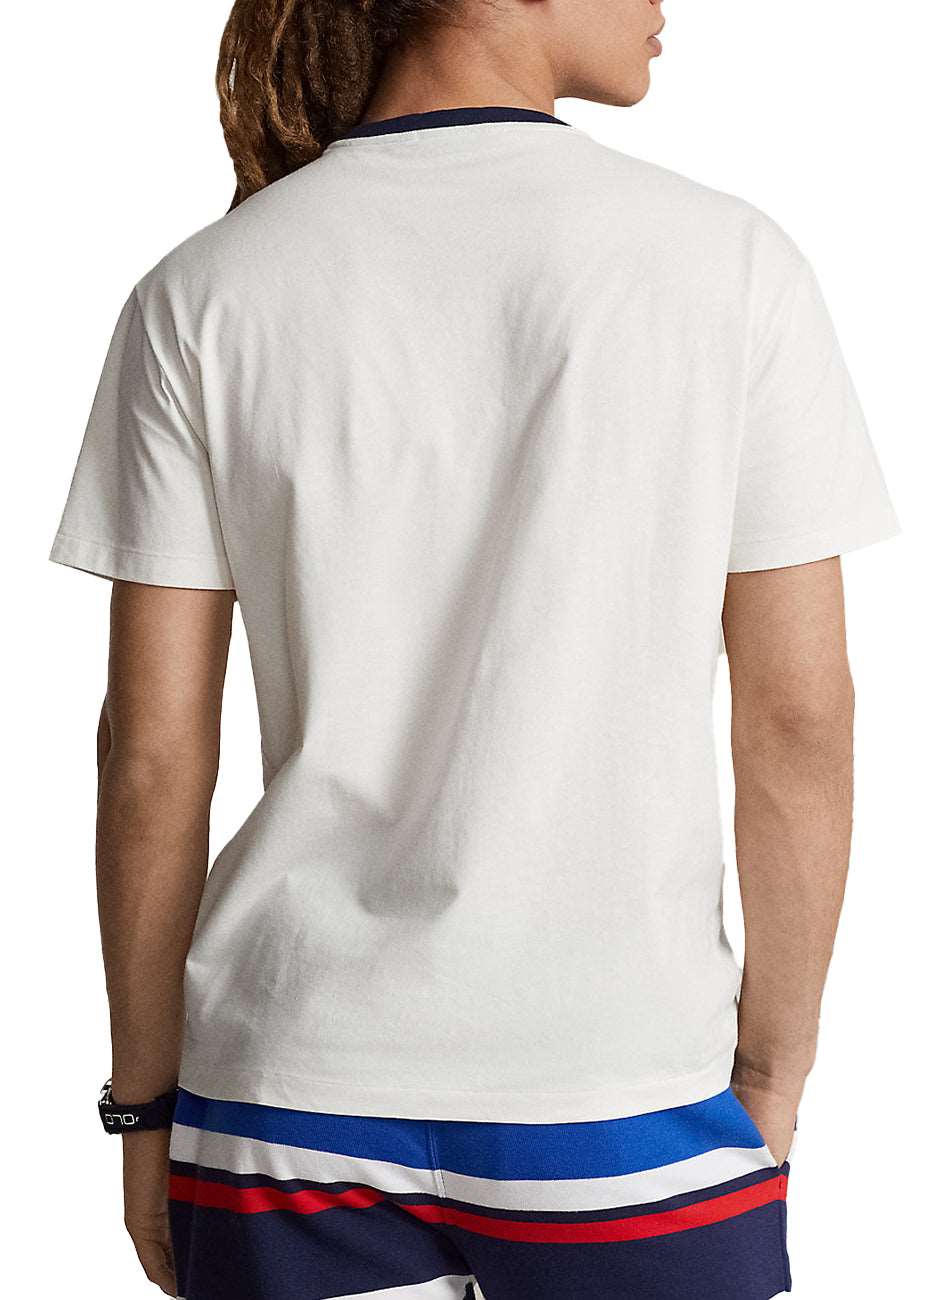 Jersey Ringer T-Shirt - White